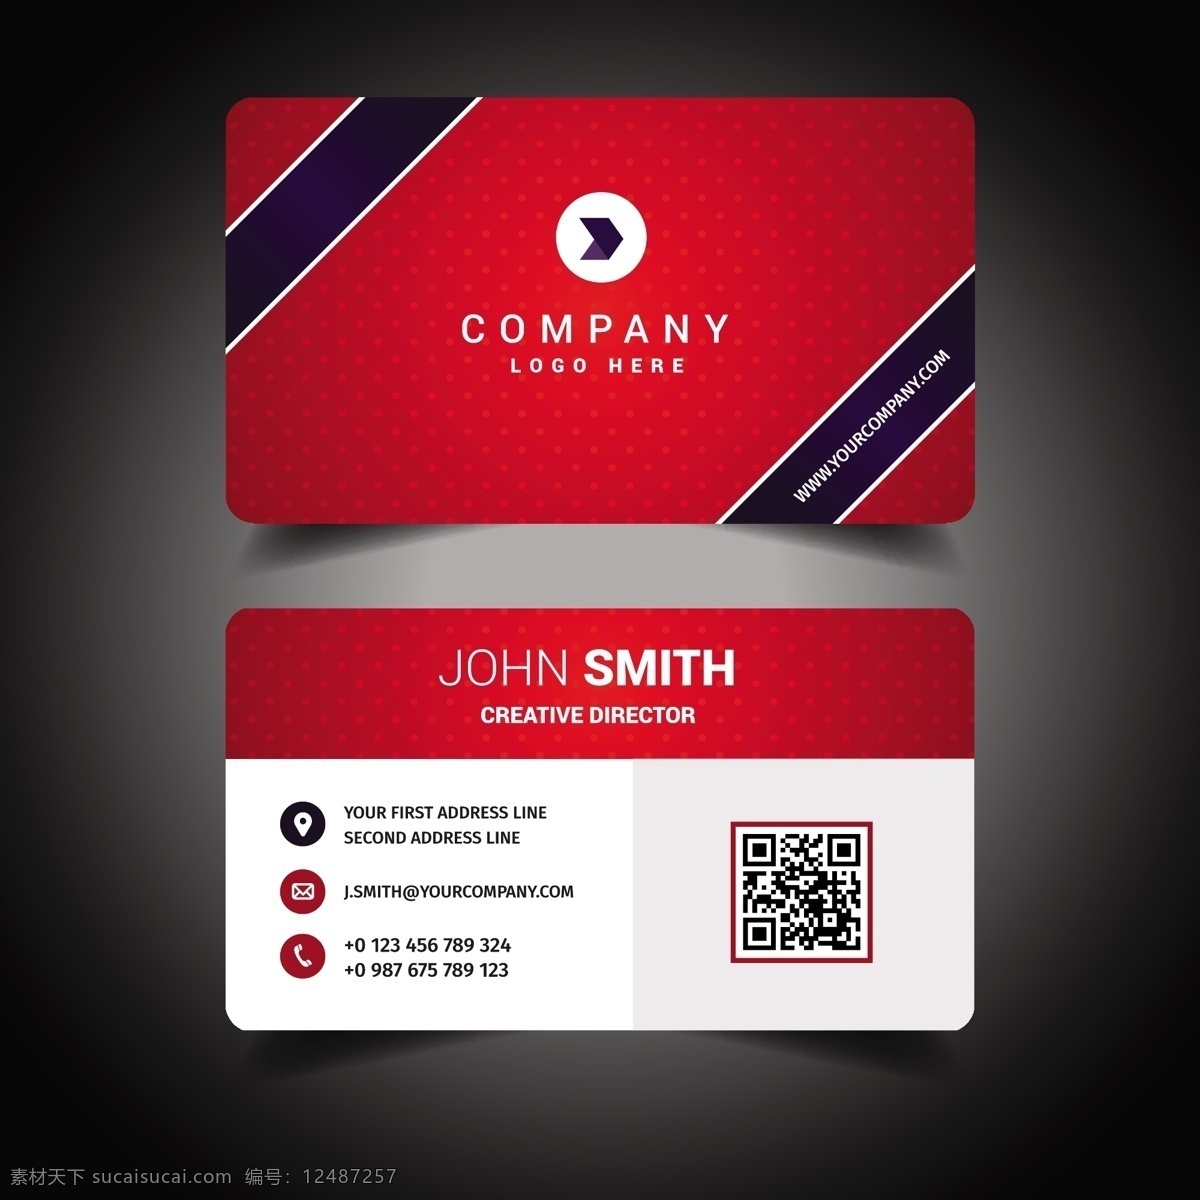 名片模板设计 商标 名片 商业 抽象 卡片 模板 办公室 红色 颜色 展示 文具 公司 抽象标志 企业标识 现代 身份 身份证